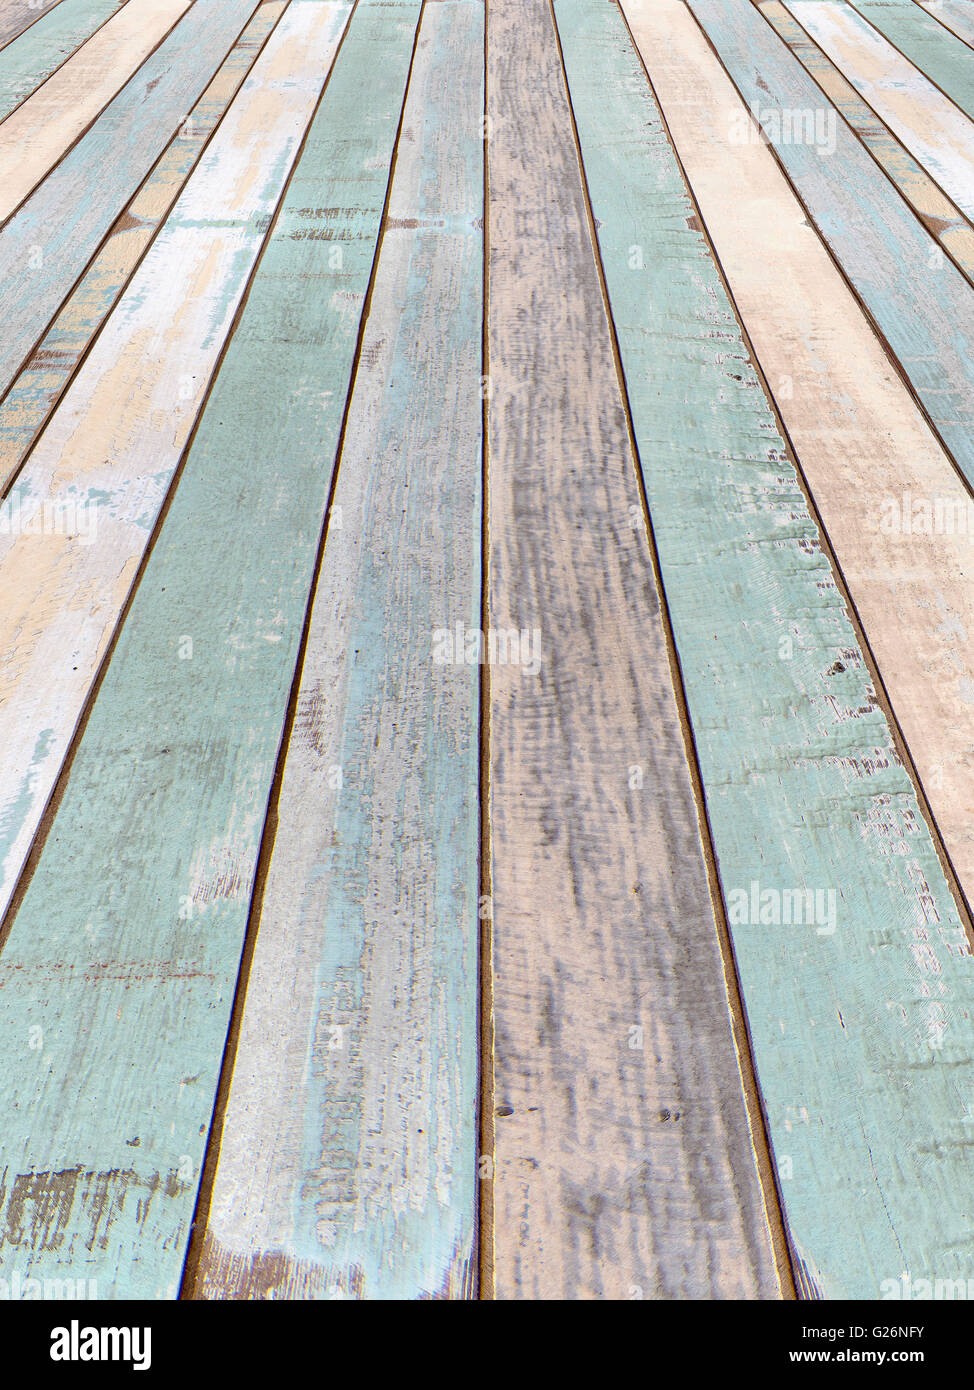 Perspektive Wand- und alten Holzbrett Farbtextur für Hintergrund Stockfoto